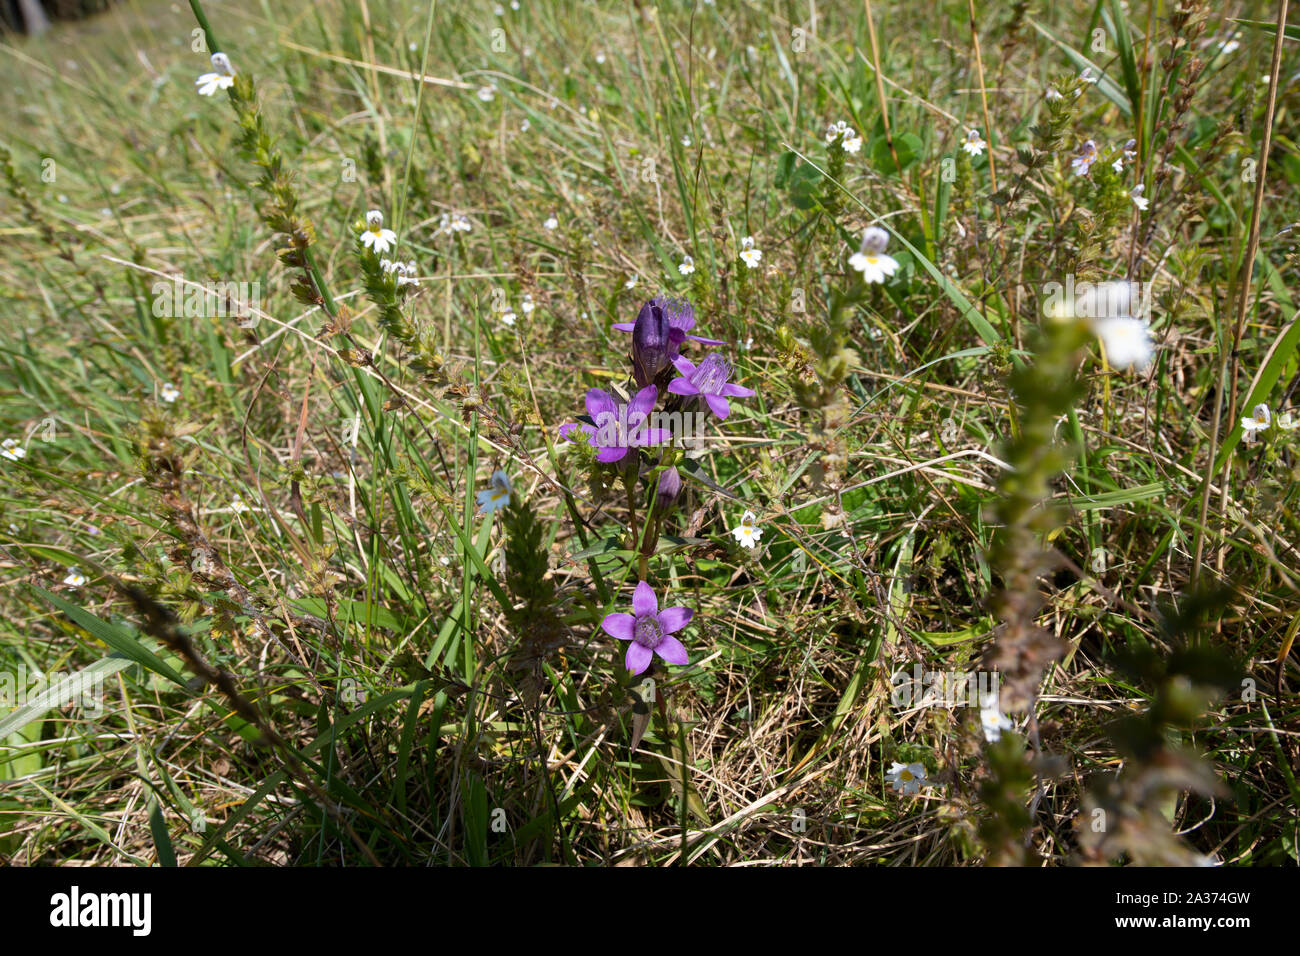 Violeta de Genciana (Gentiana purpurea) creciendo en el Zugspitz región de los Alpes austríacos. Foto de stock